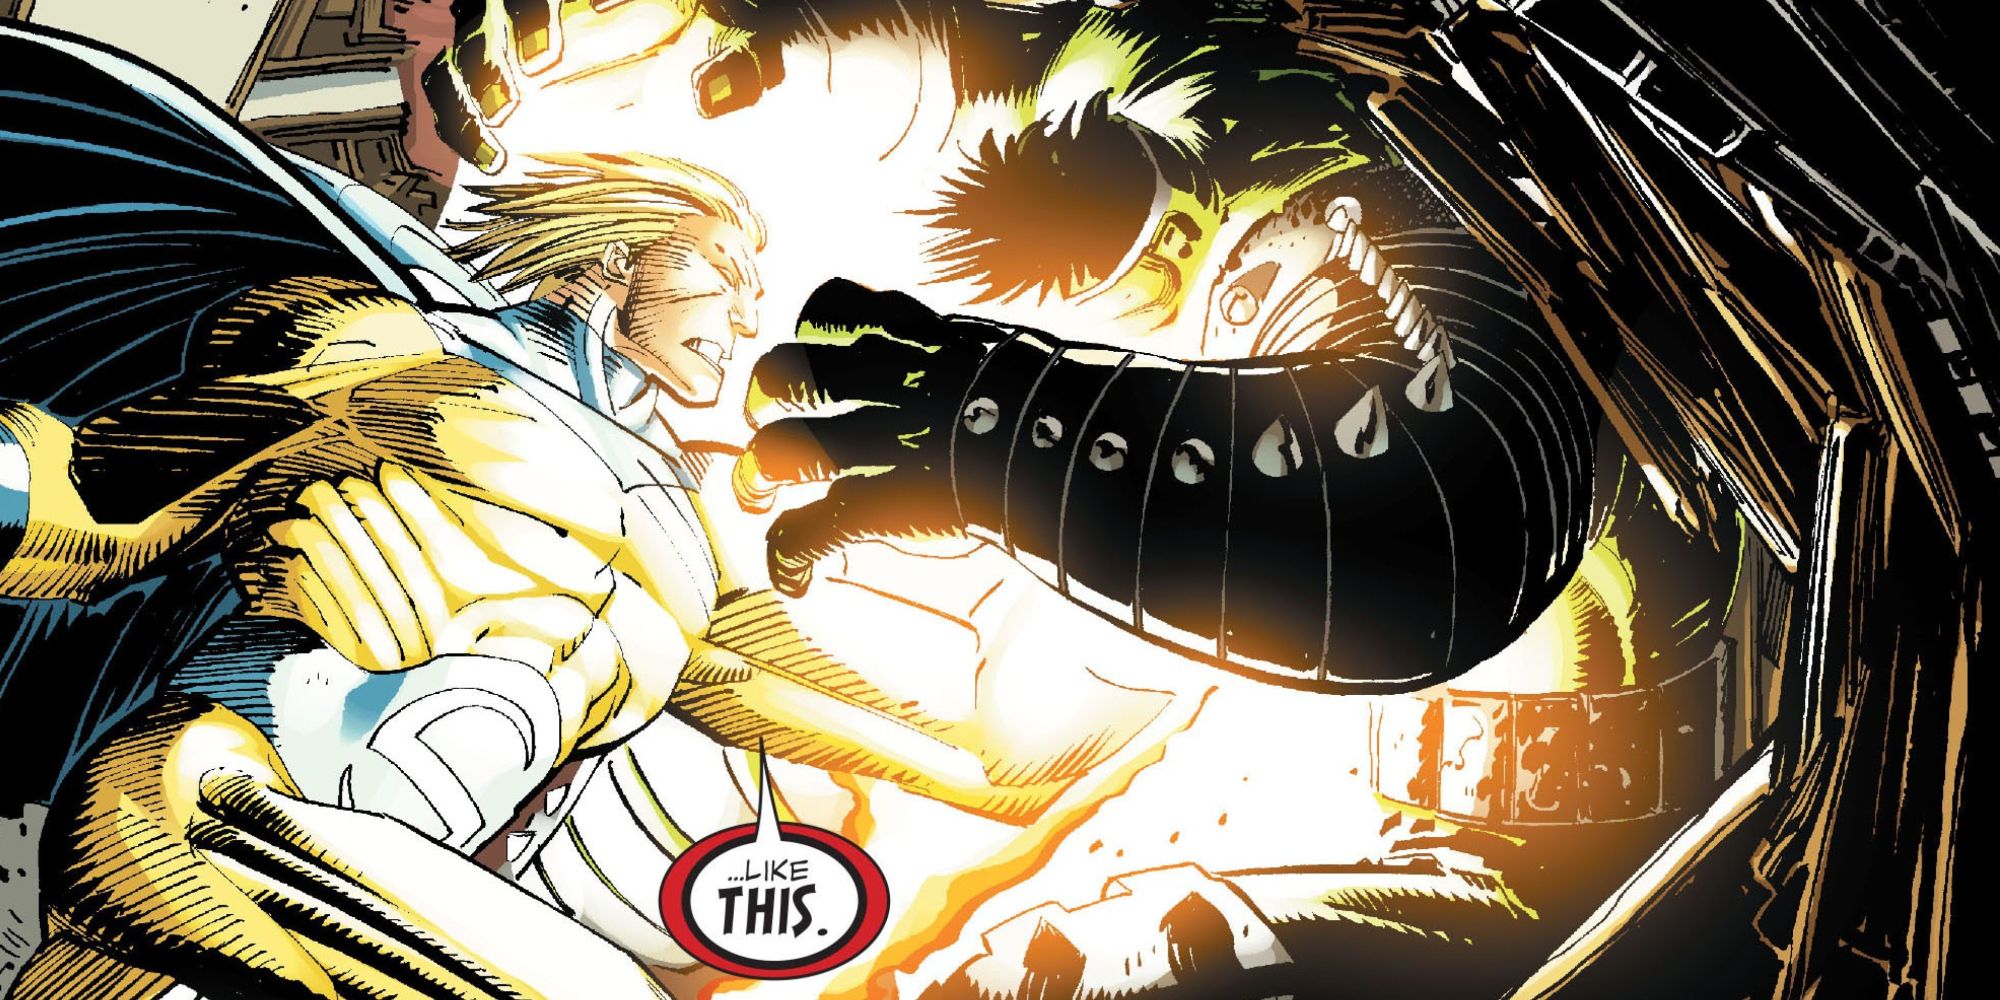 Sentinela dá um soco no Hulk na história em quadrinhos World War Hulk #5.